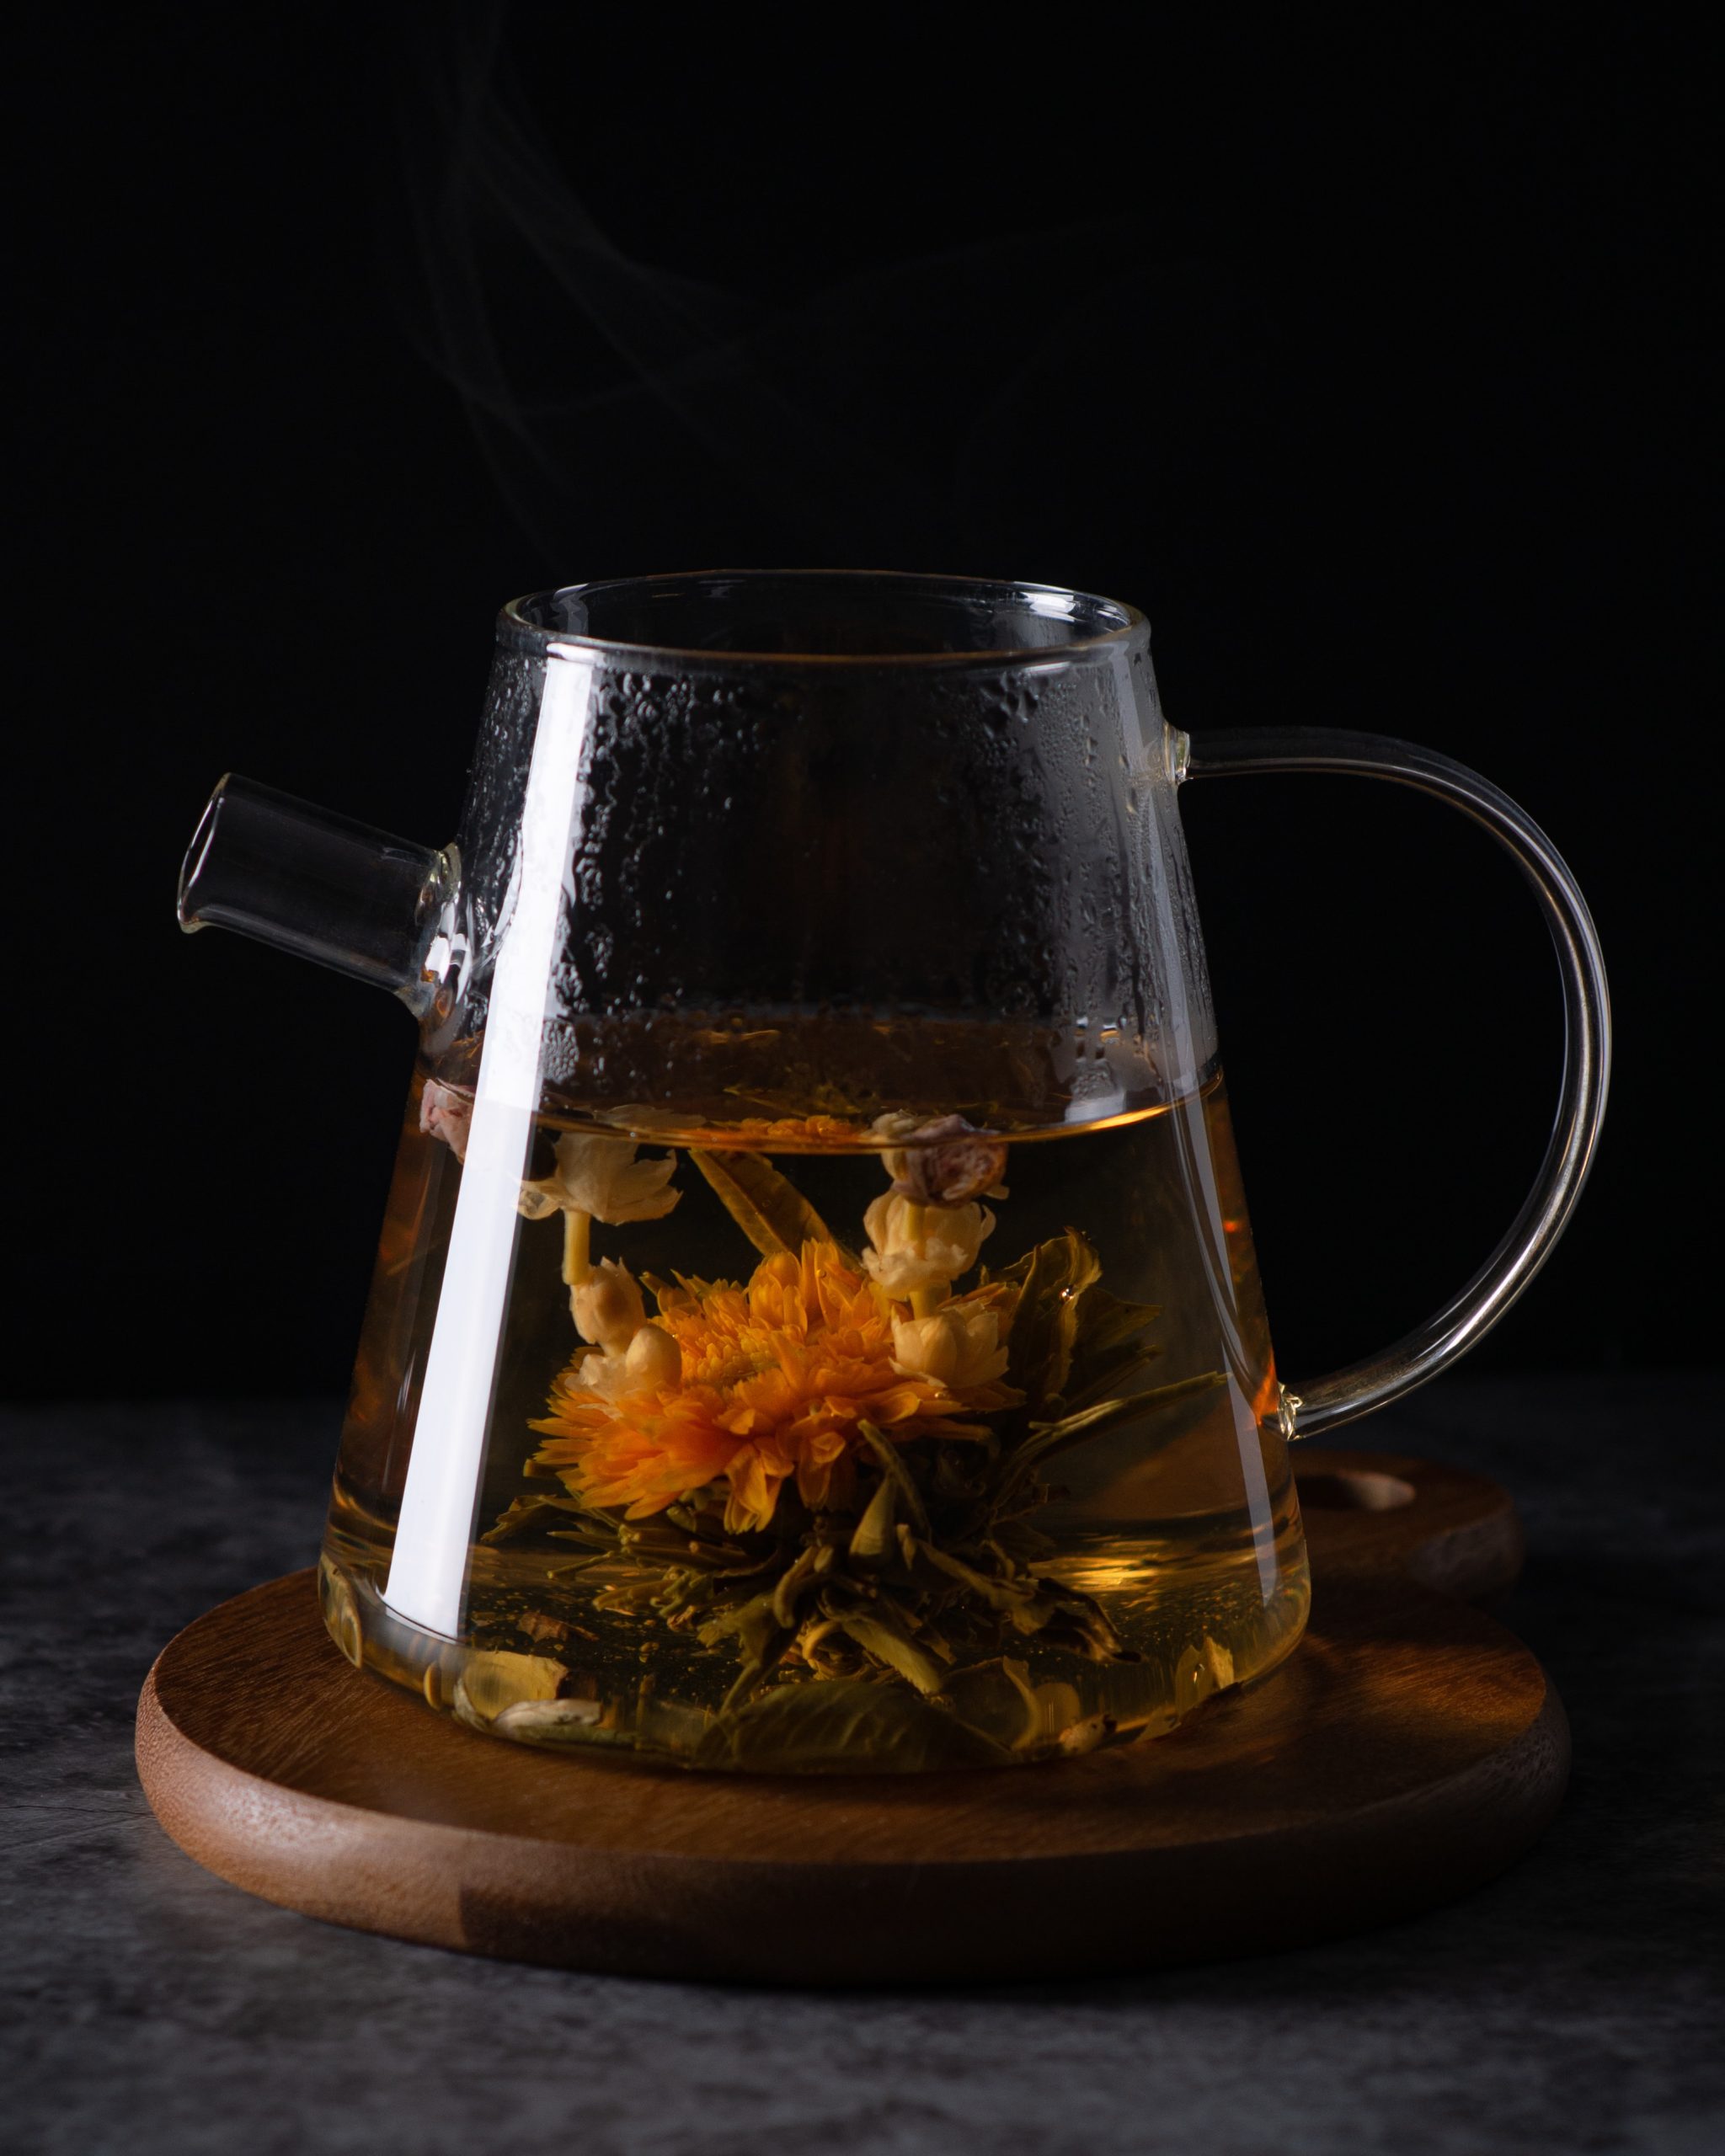 Jasmine Green Tea Blends: Exploring Flavorful Combinations And Varieties